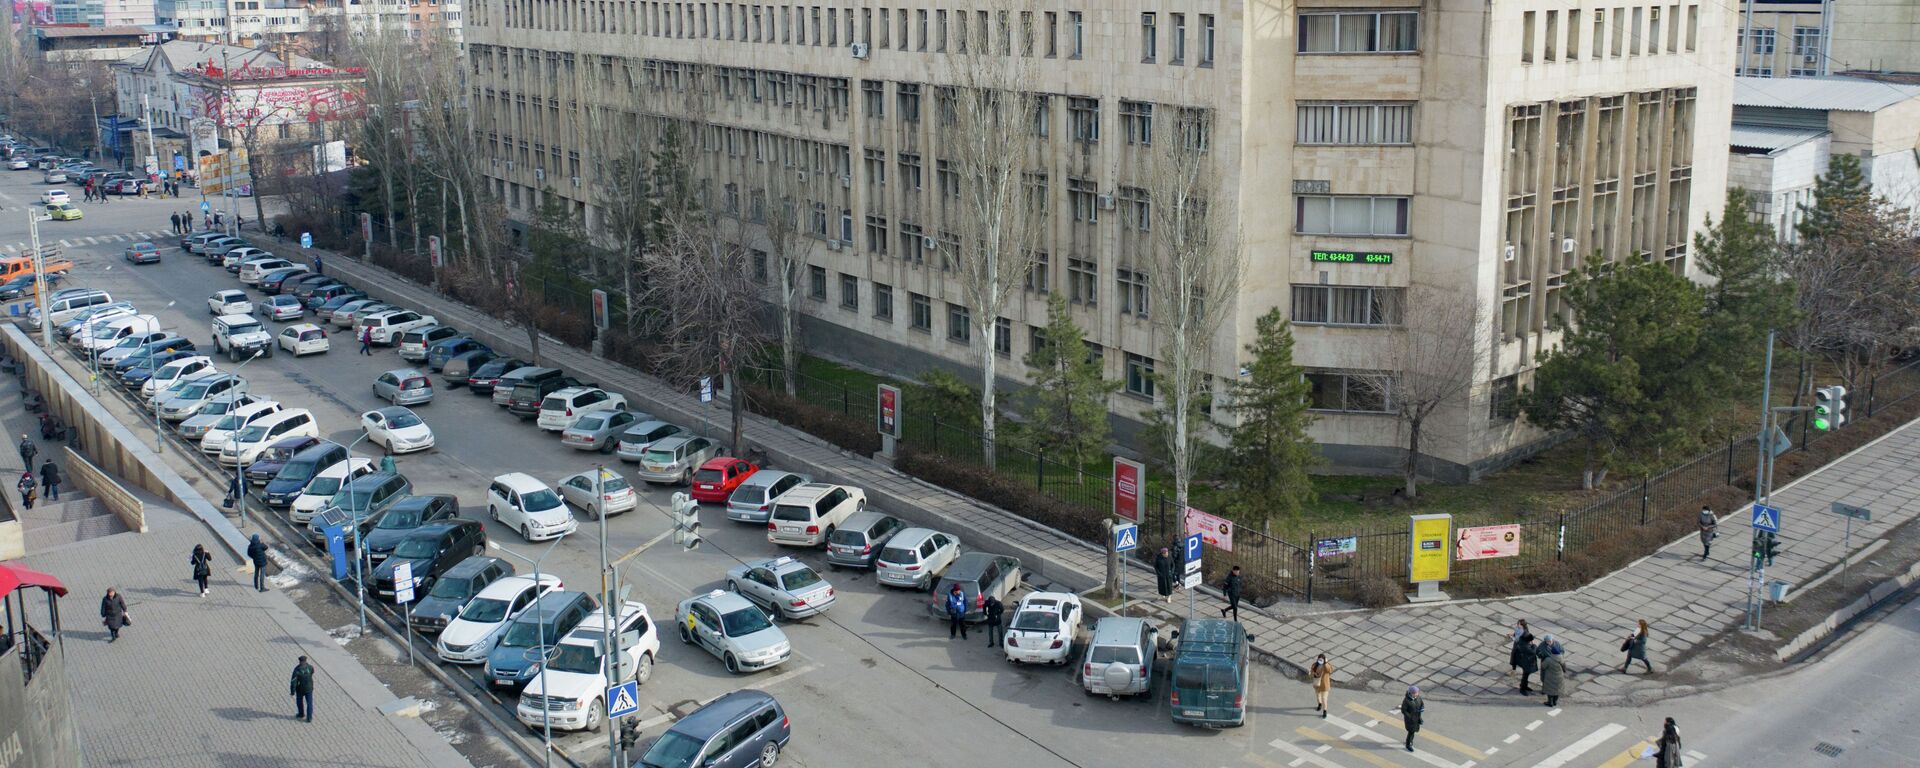 Автомобили припаркованные на улице Шопокова в Бишкеке. Архивное фото - Sputnik Кыргызстан, 1920, 24.03.2022